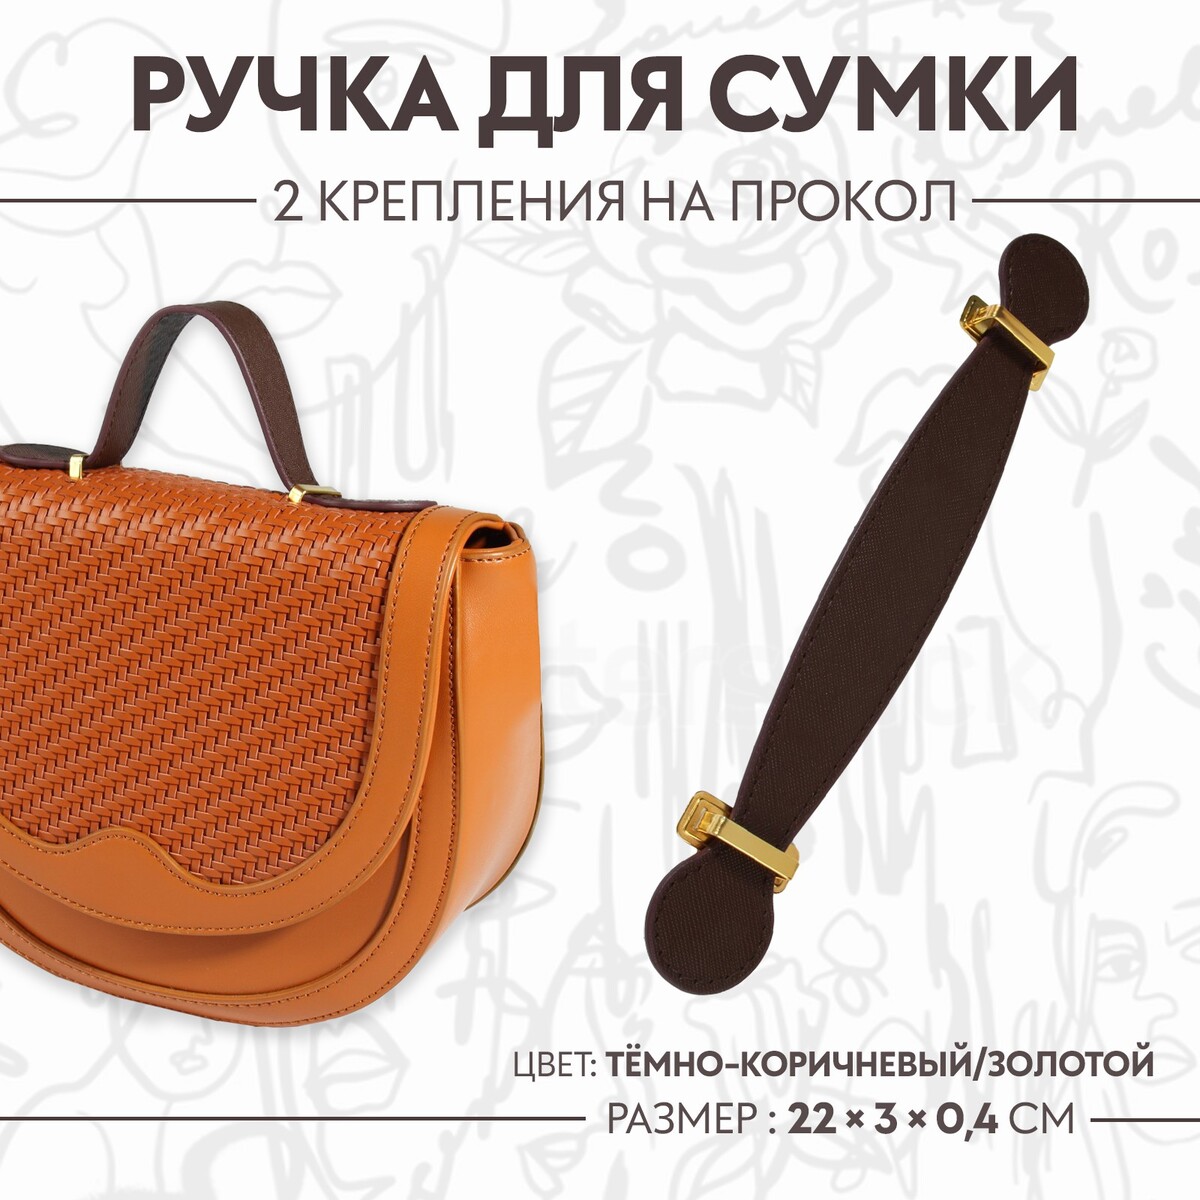 Ручка для сумки, 2 крепления на прокол, 22 × 3 × 0,4 см, цвет темно-коричневый/золотой ручка для сумки бусы d 14 мм 60 см золотой